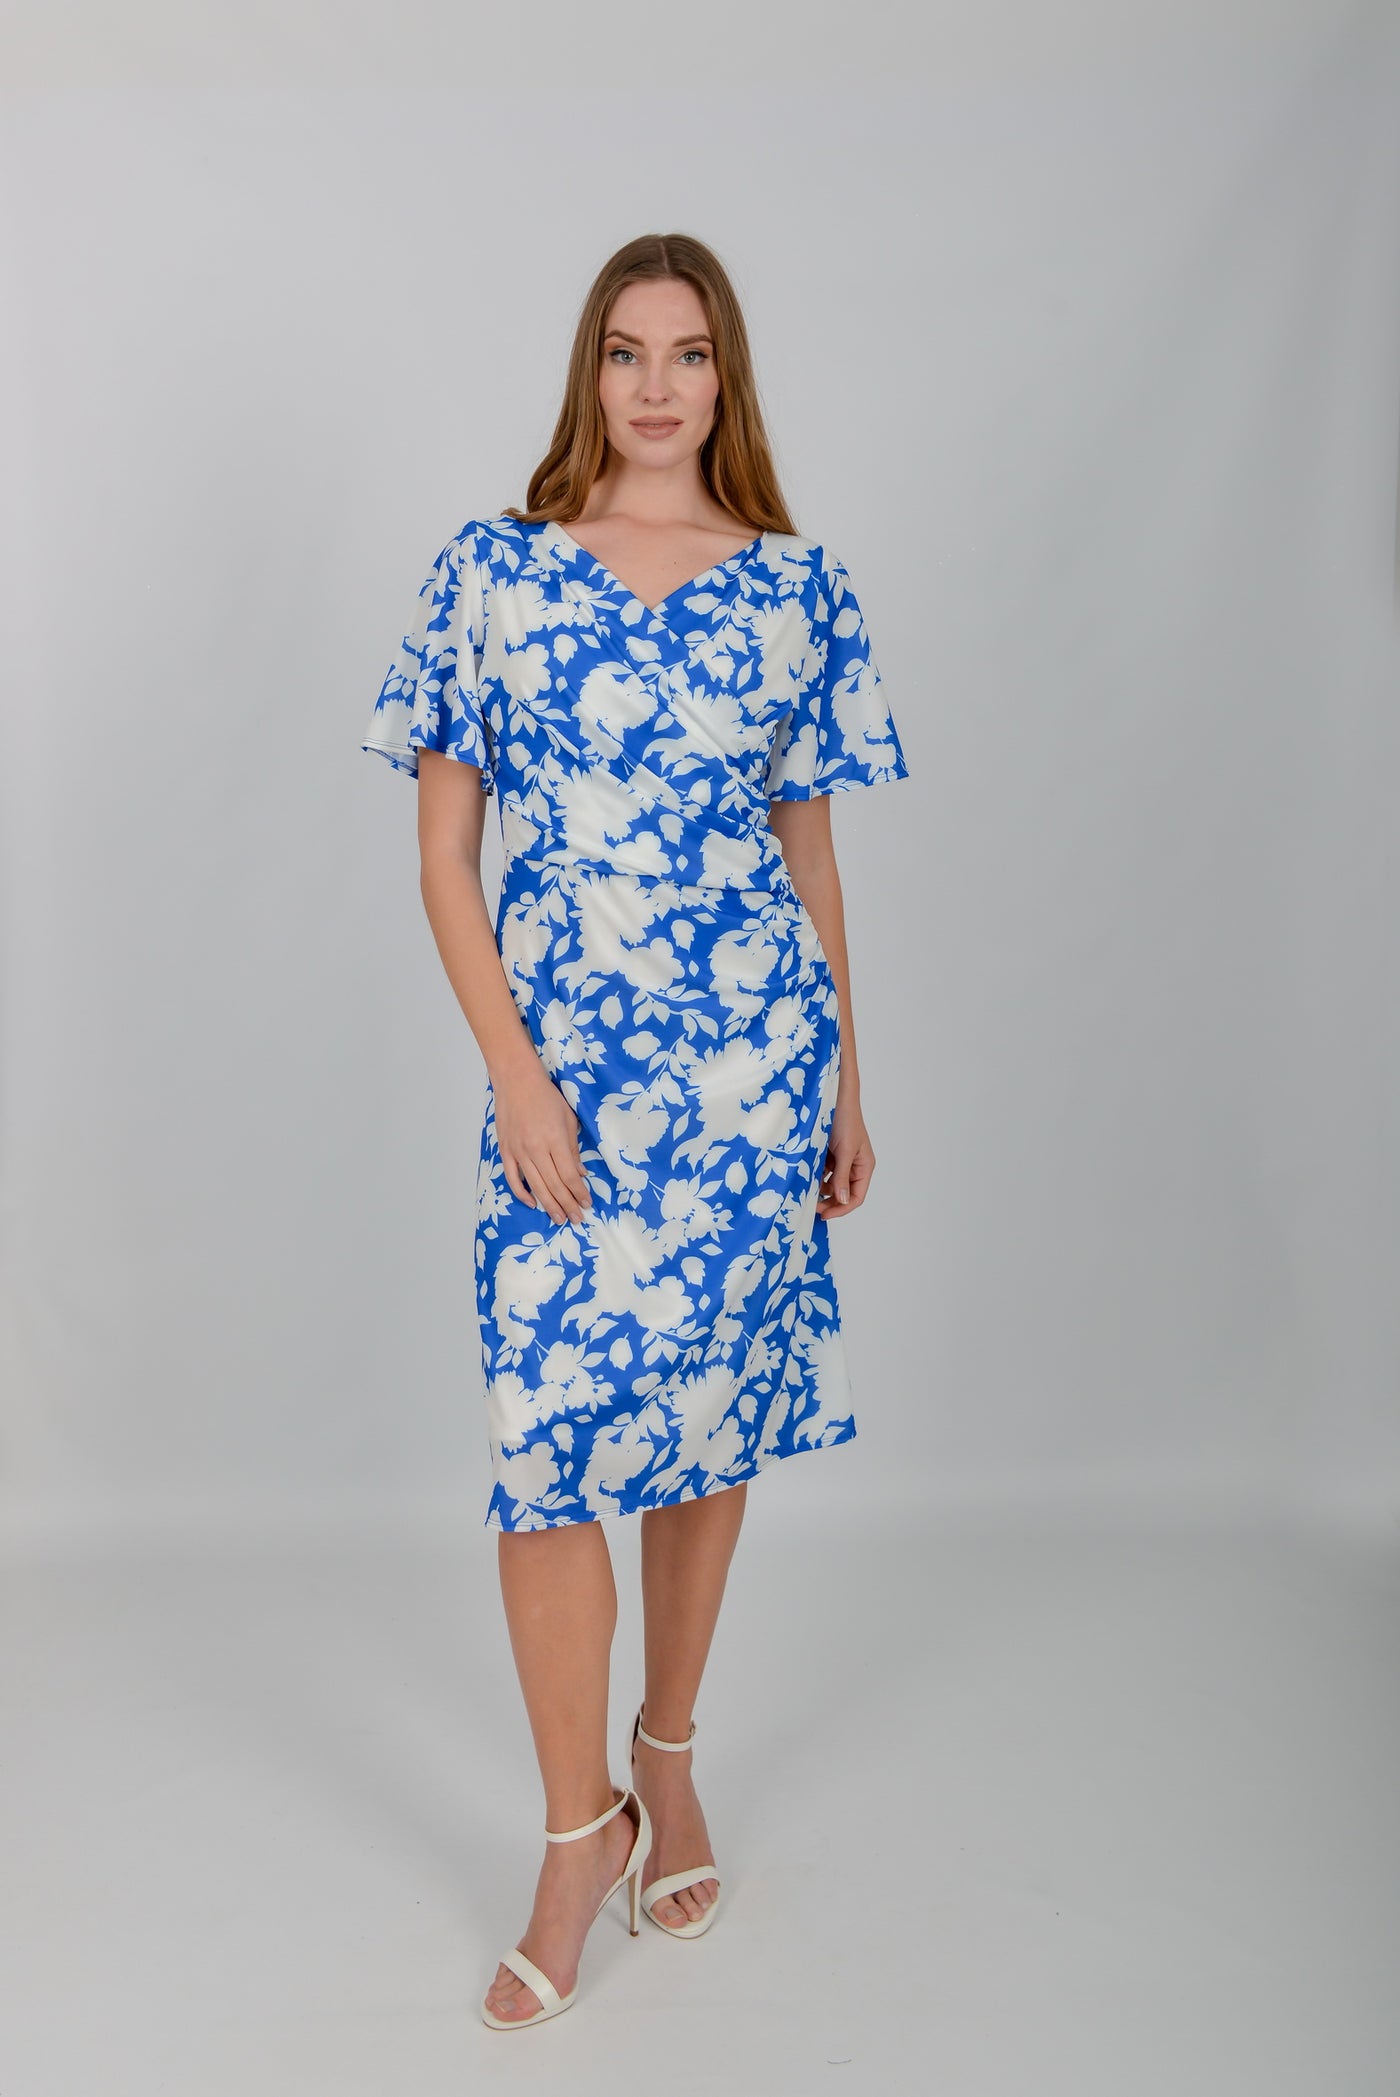 Blue & White Floral Print Wrap Dress